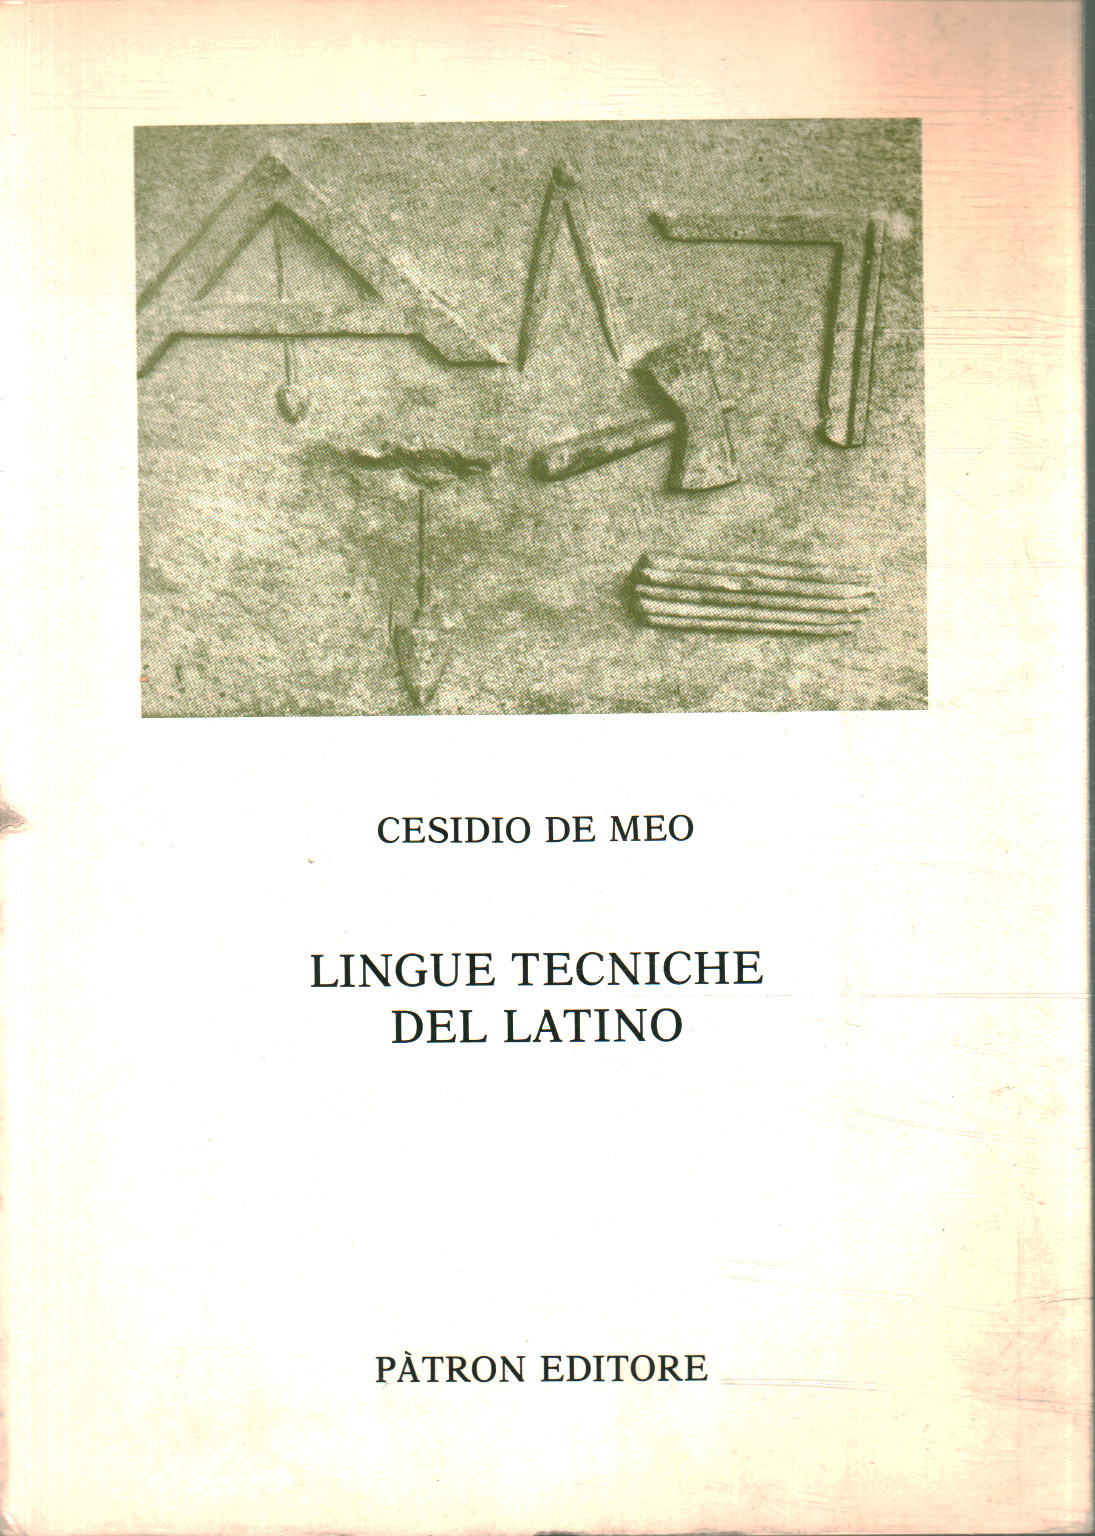 Langues techniques du latin, Cesidio De Meo